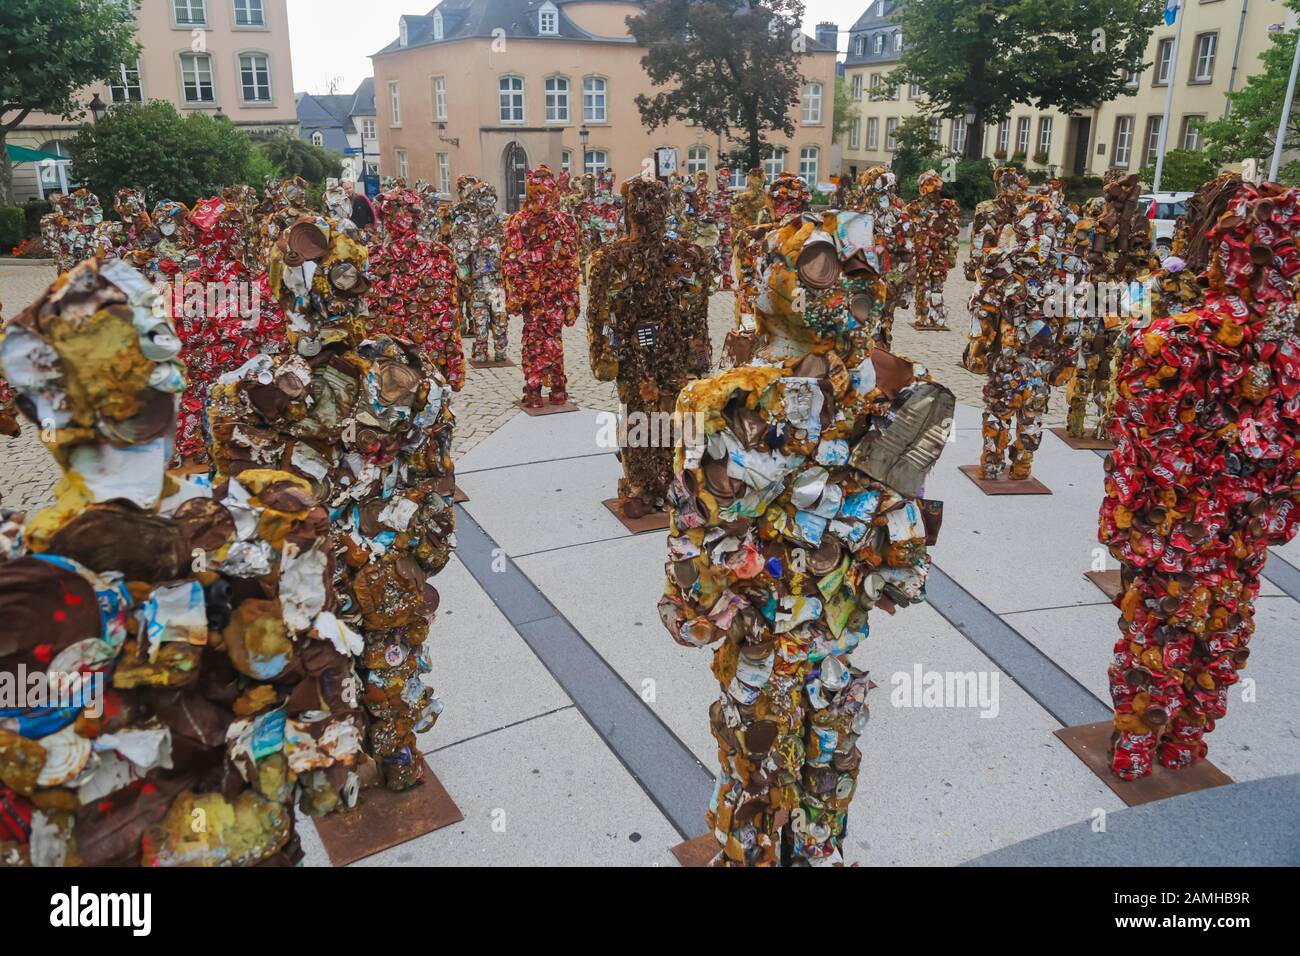 Lussemburgo, Lussemburgo - 12 settembre 2014: Cestino esercito di persone fatte di cestino rifiuti dall'artista tedesco Schult Foto Stock